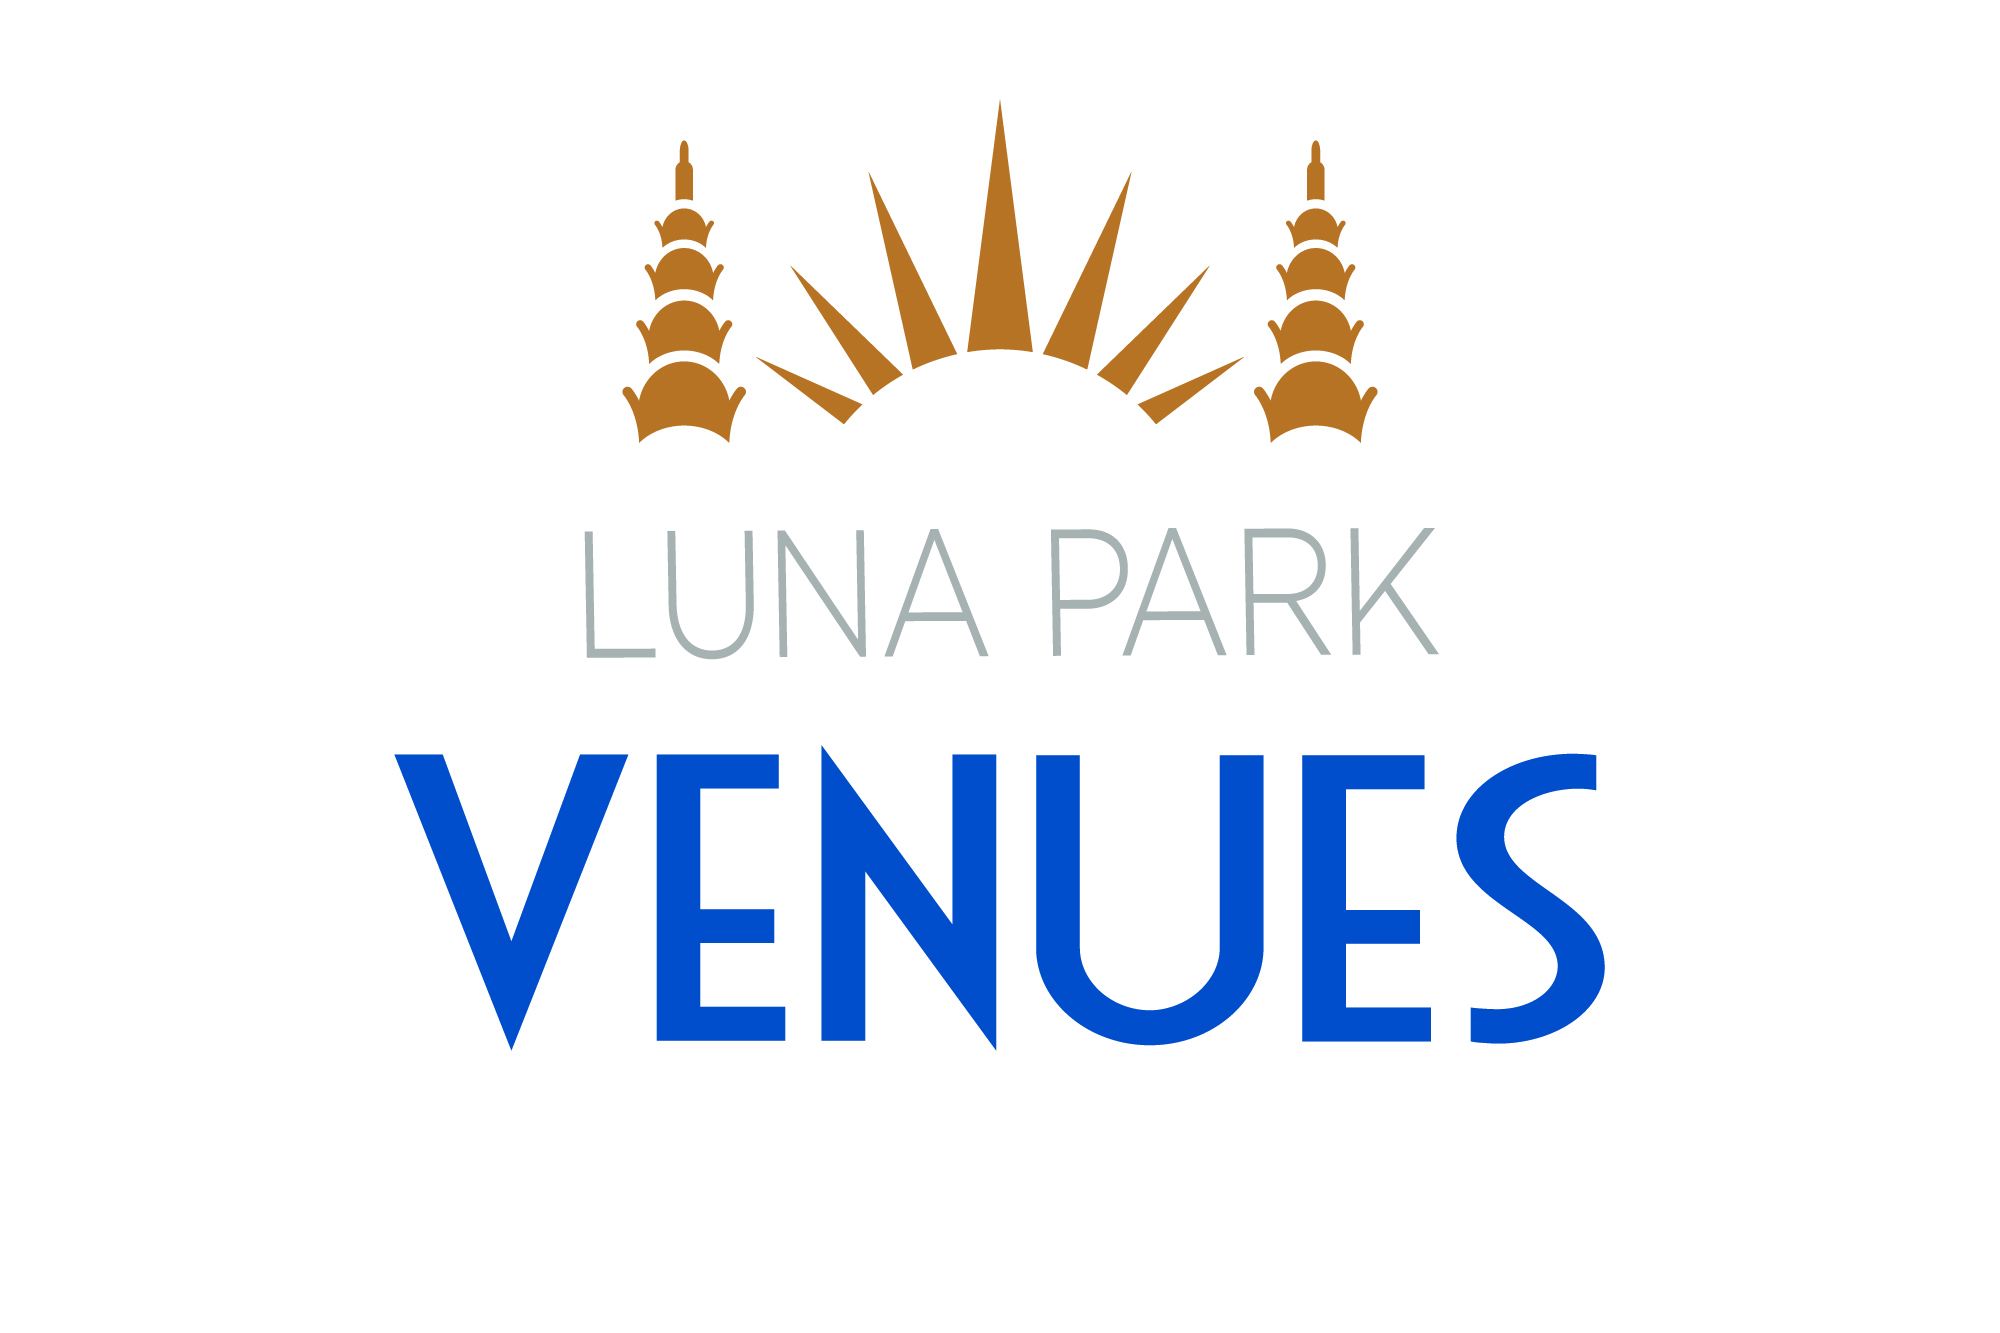 Luna Park Venues logo